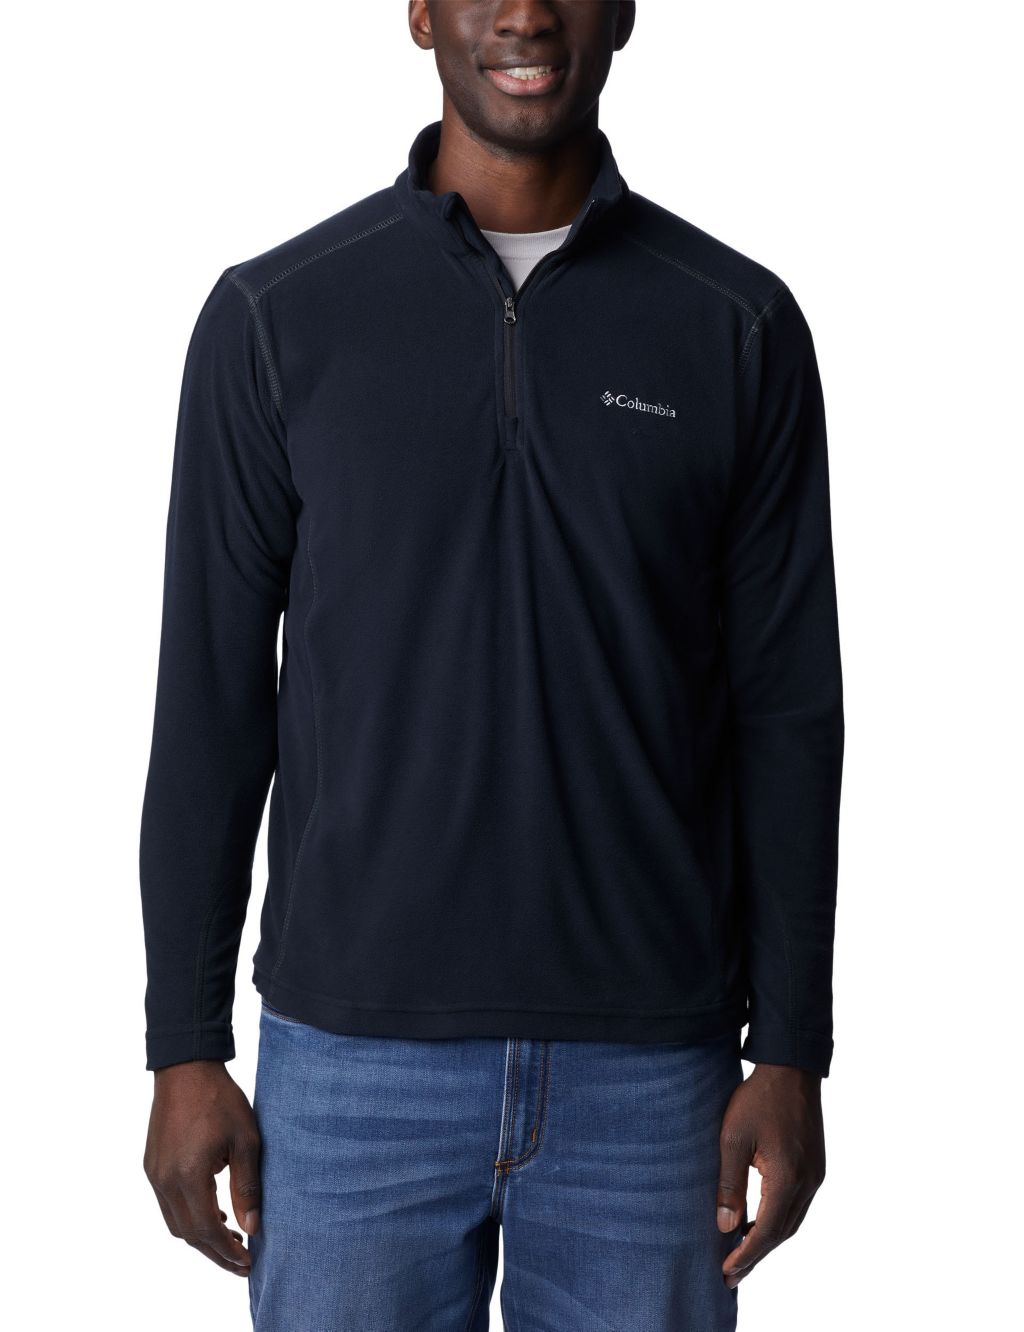 Buy Klamath Range II Fleece Half Zip Jacket | Columbia | M&S